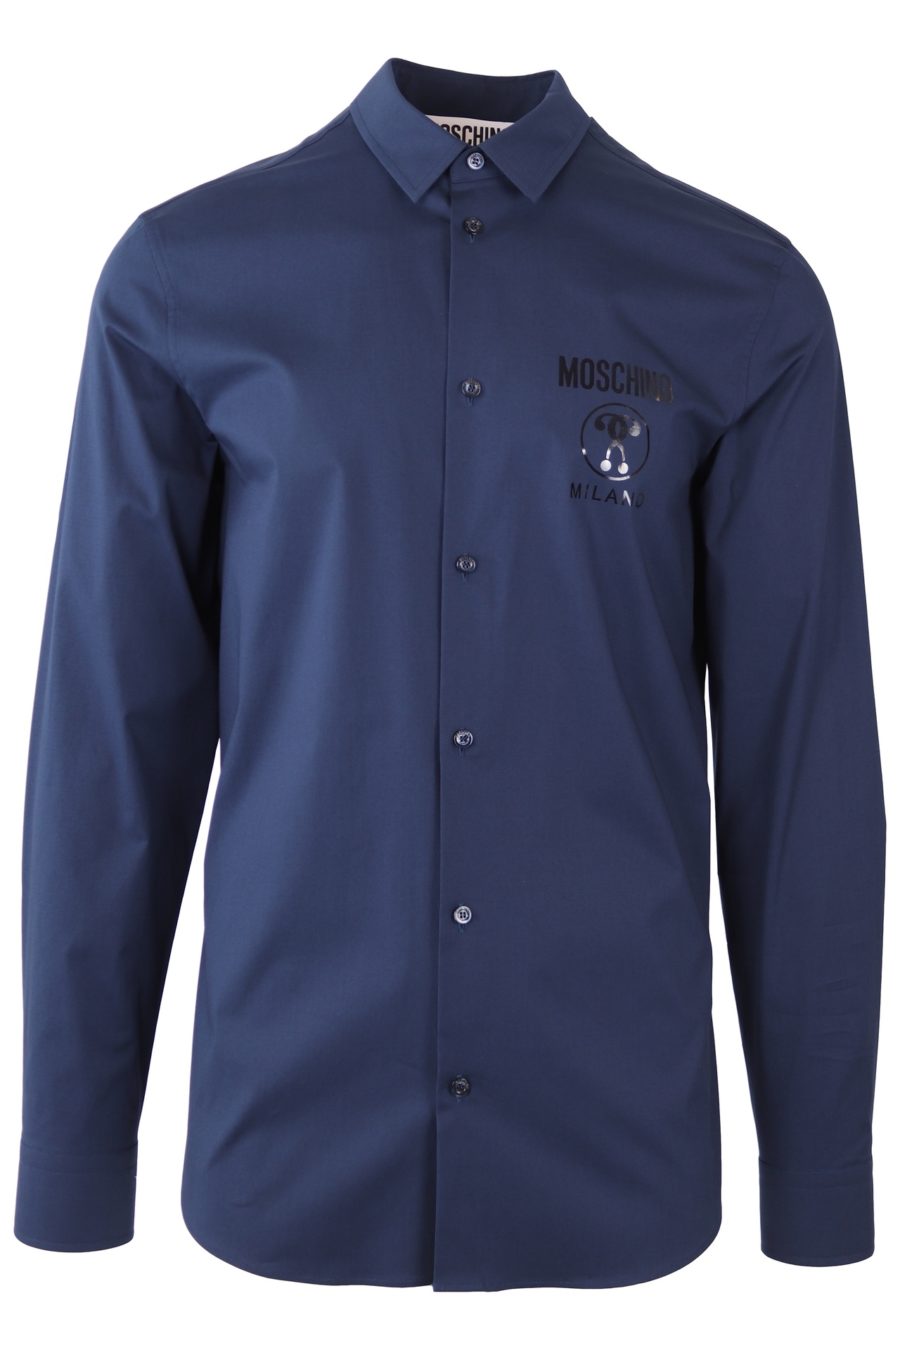 Camisa Moschino Couture azul con logo y doble pregunta en el lateral - 4822e6d3234c6a6652b8a6acff9b7fa8b3f73a91